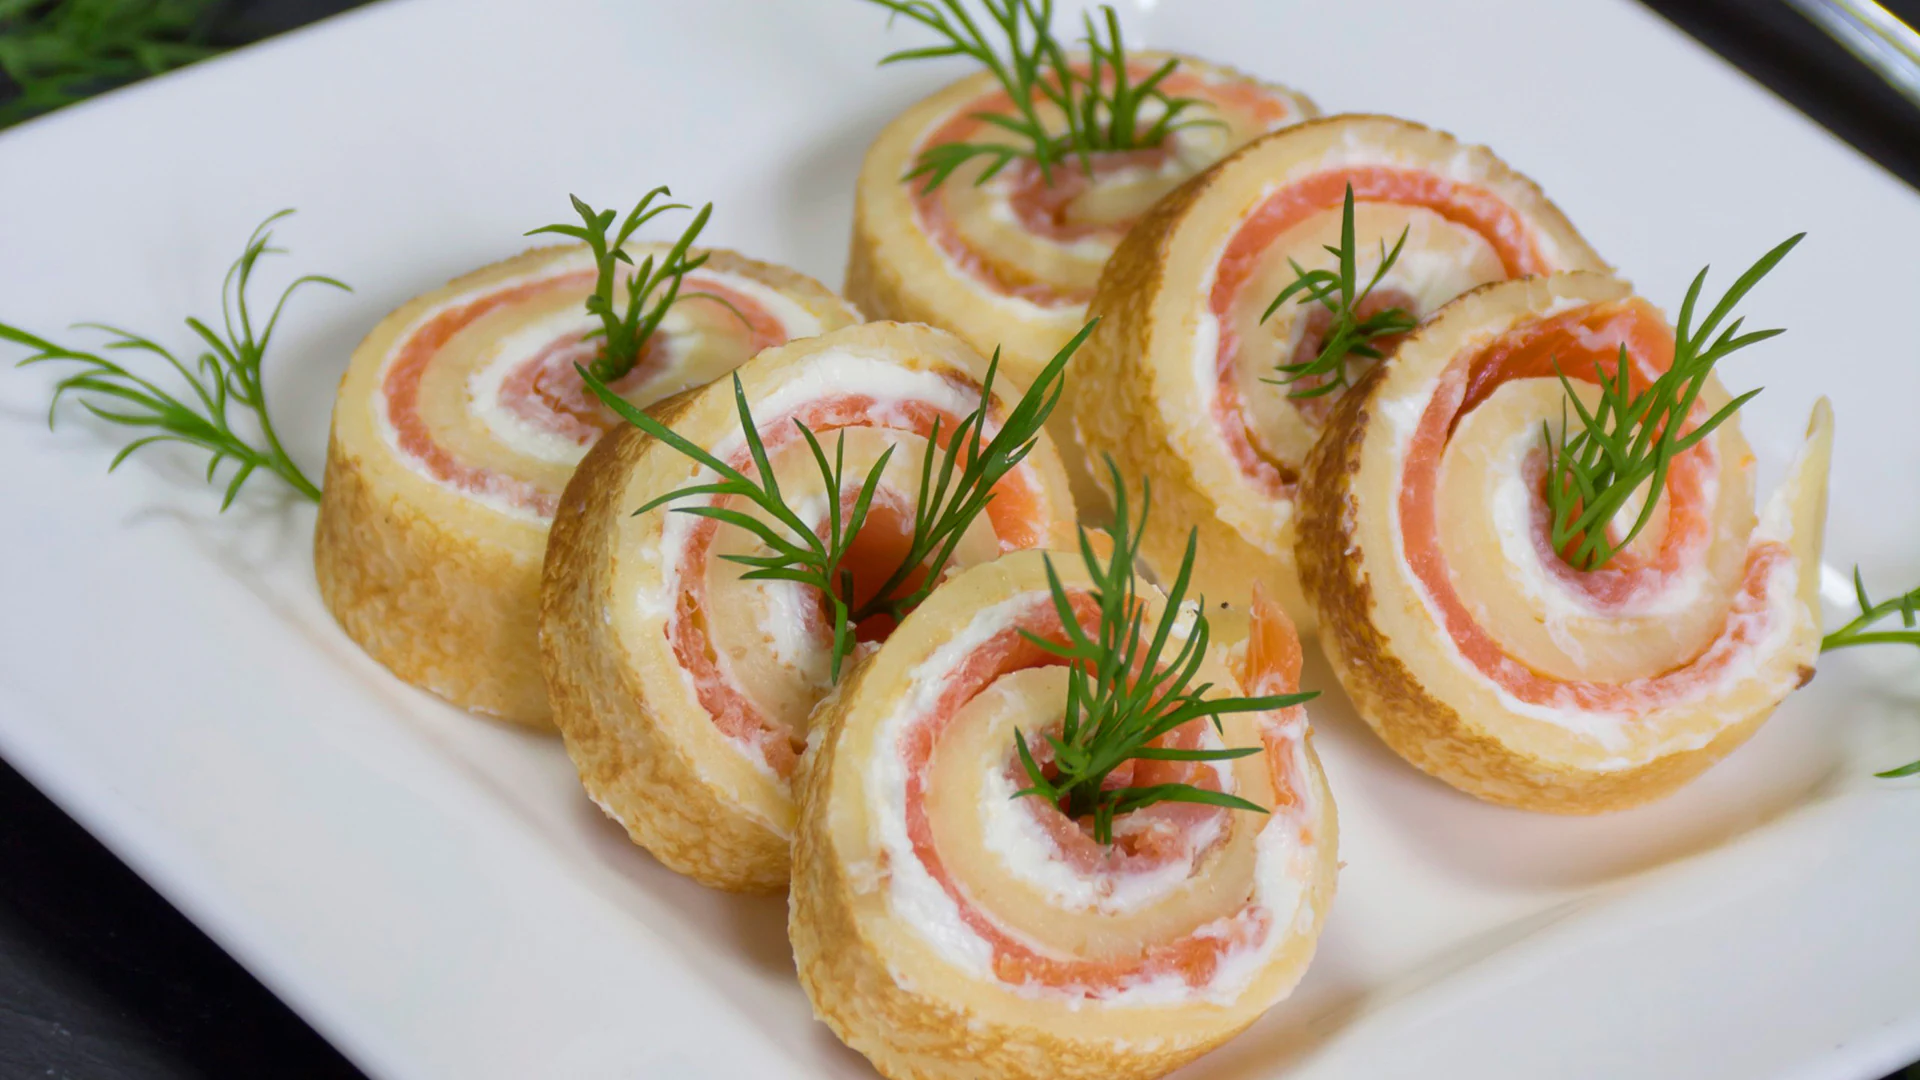 Aperitivos de salmón ahumado y crema de queso al cebollino - Gurmé